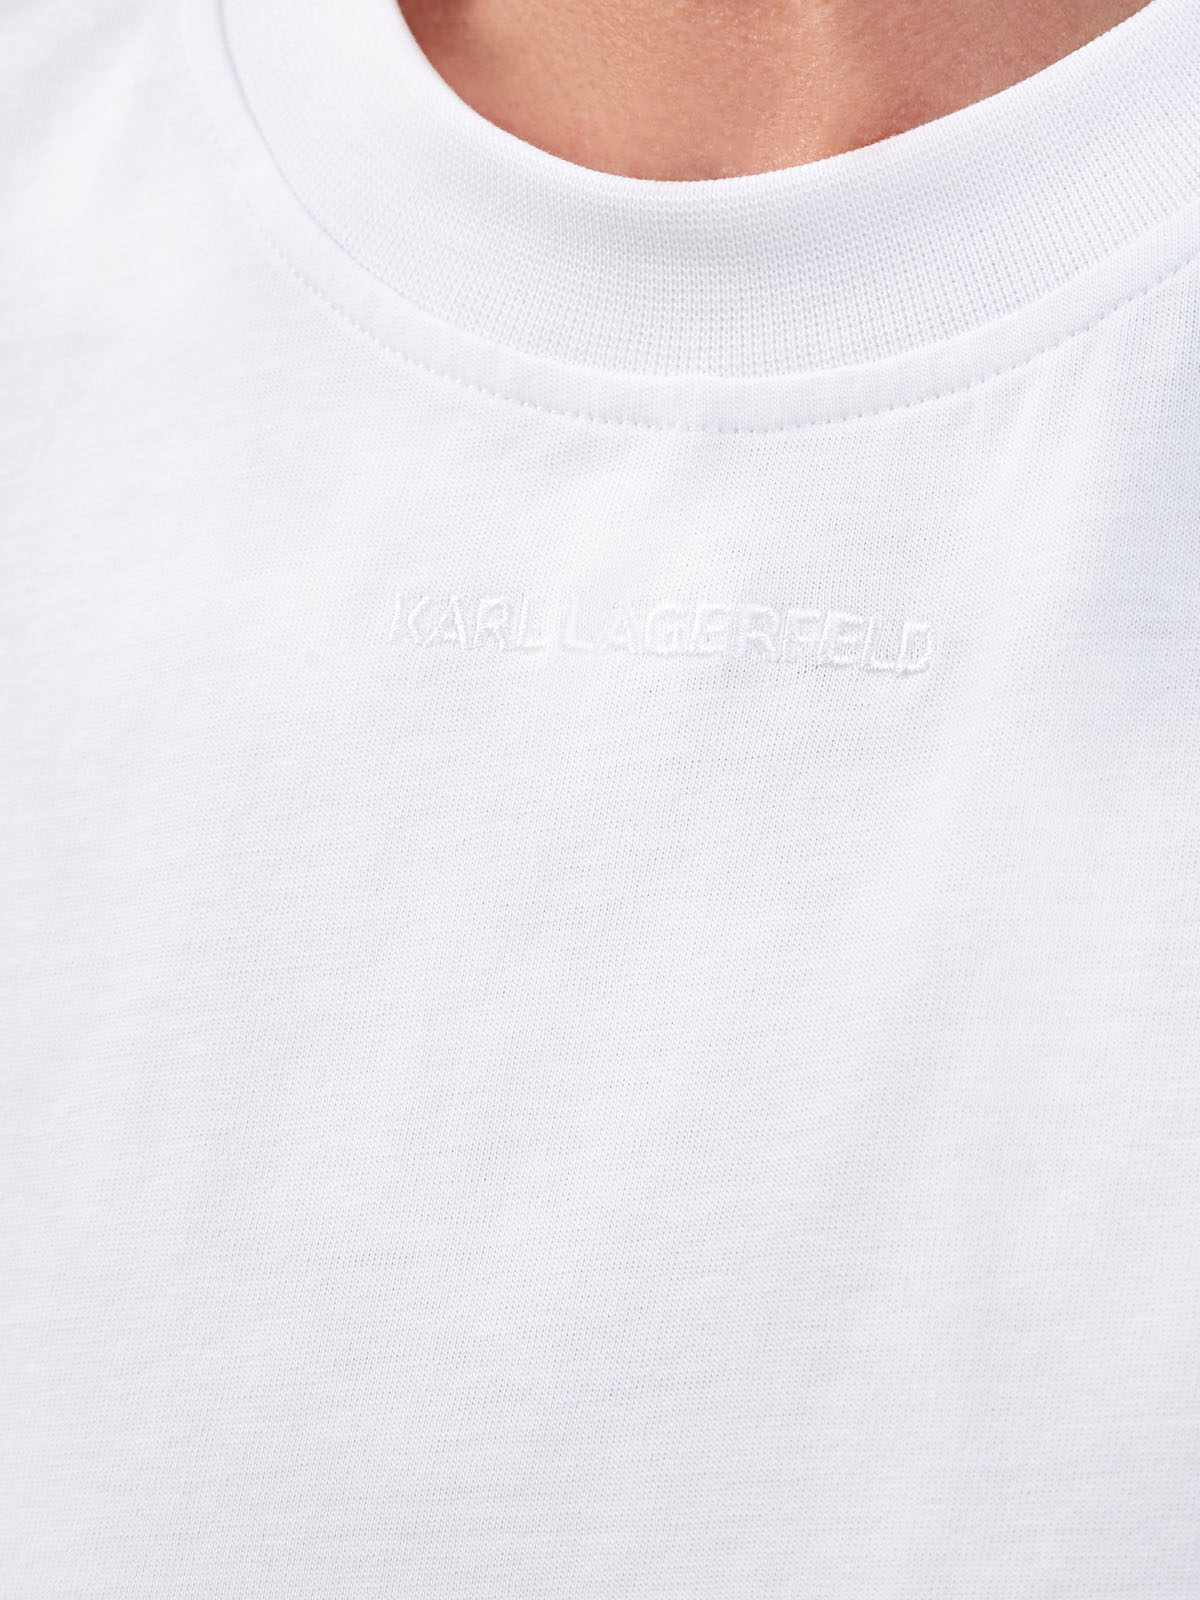 Укороченная футболка из хлопка с вышивкой в тон KARL LAGERFELD, цвет белый, размер XS;S;M - фото 5